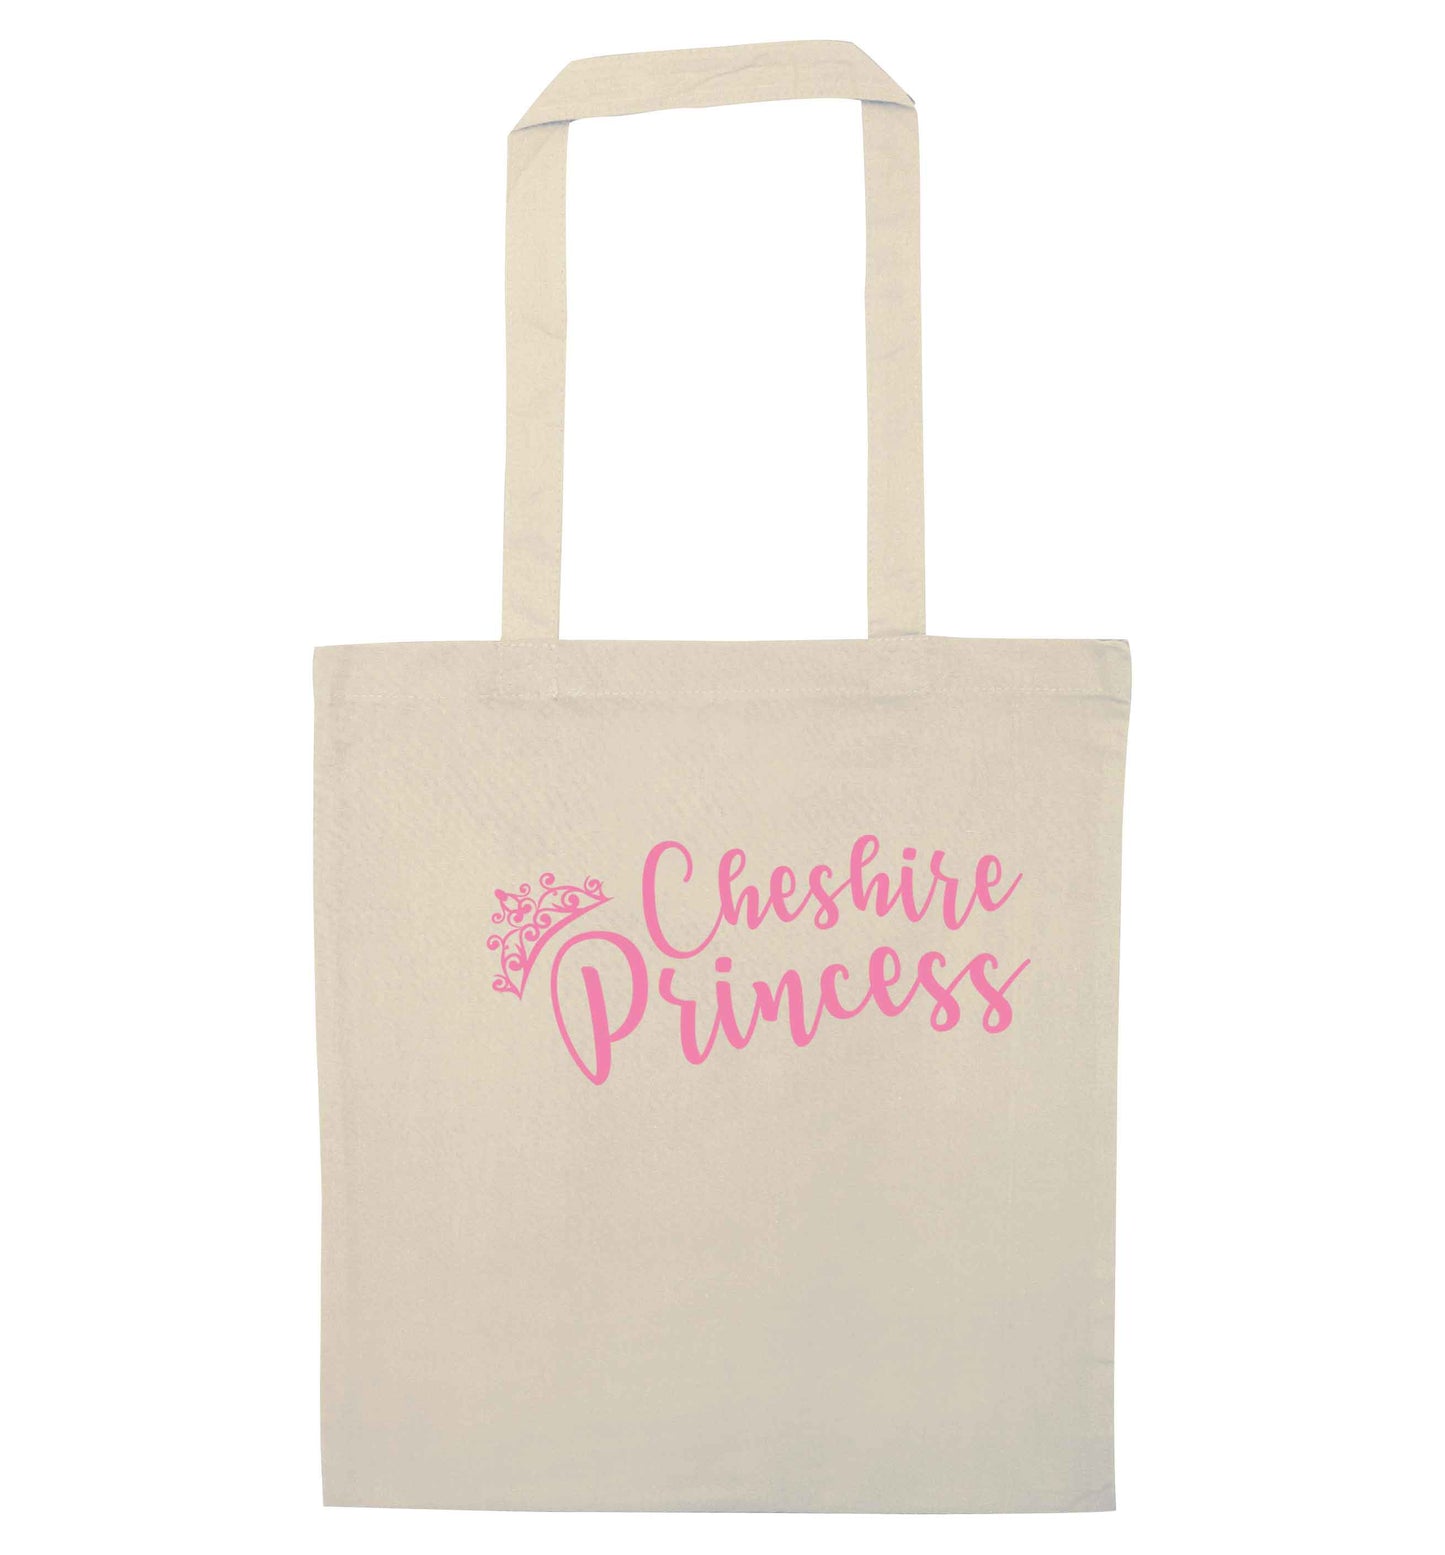 Cheshire princess natural tote bag